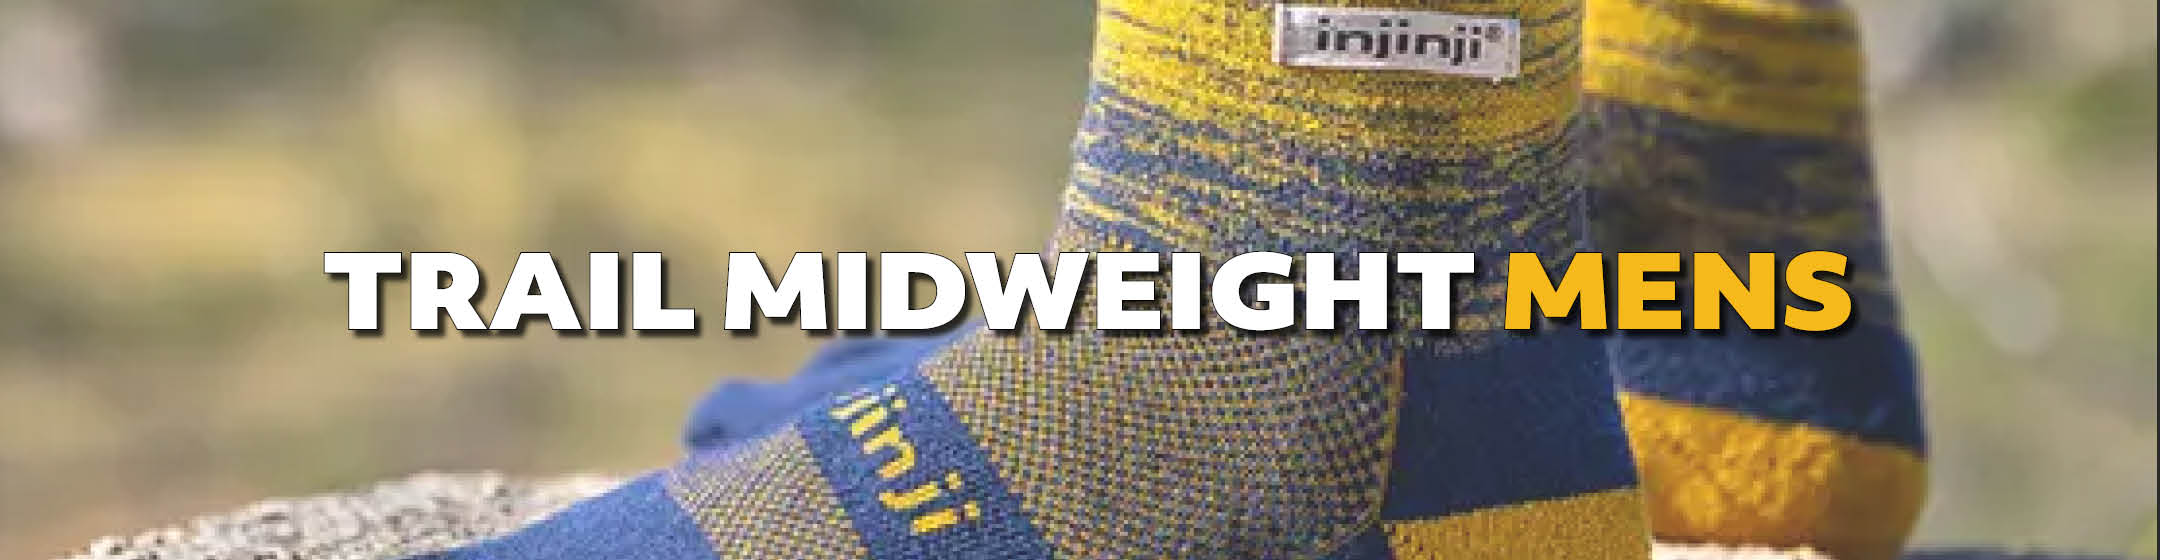 Injinji Trail Midweight Crew Toe Socks